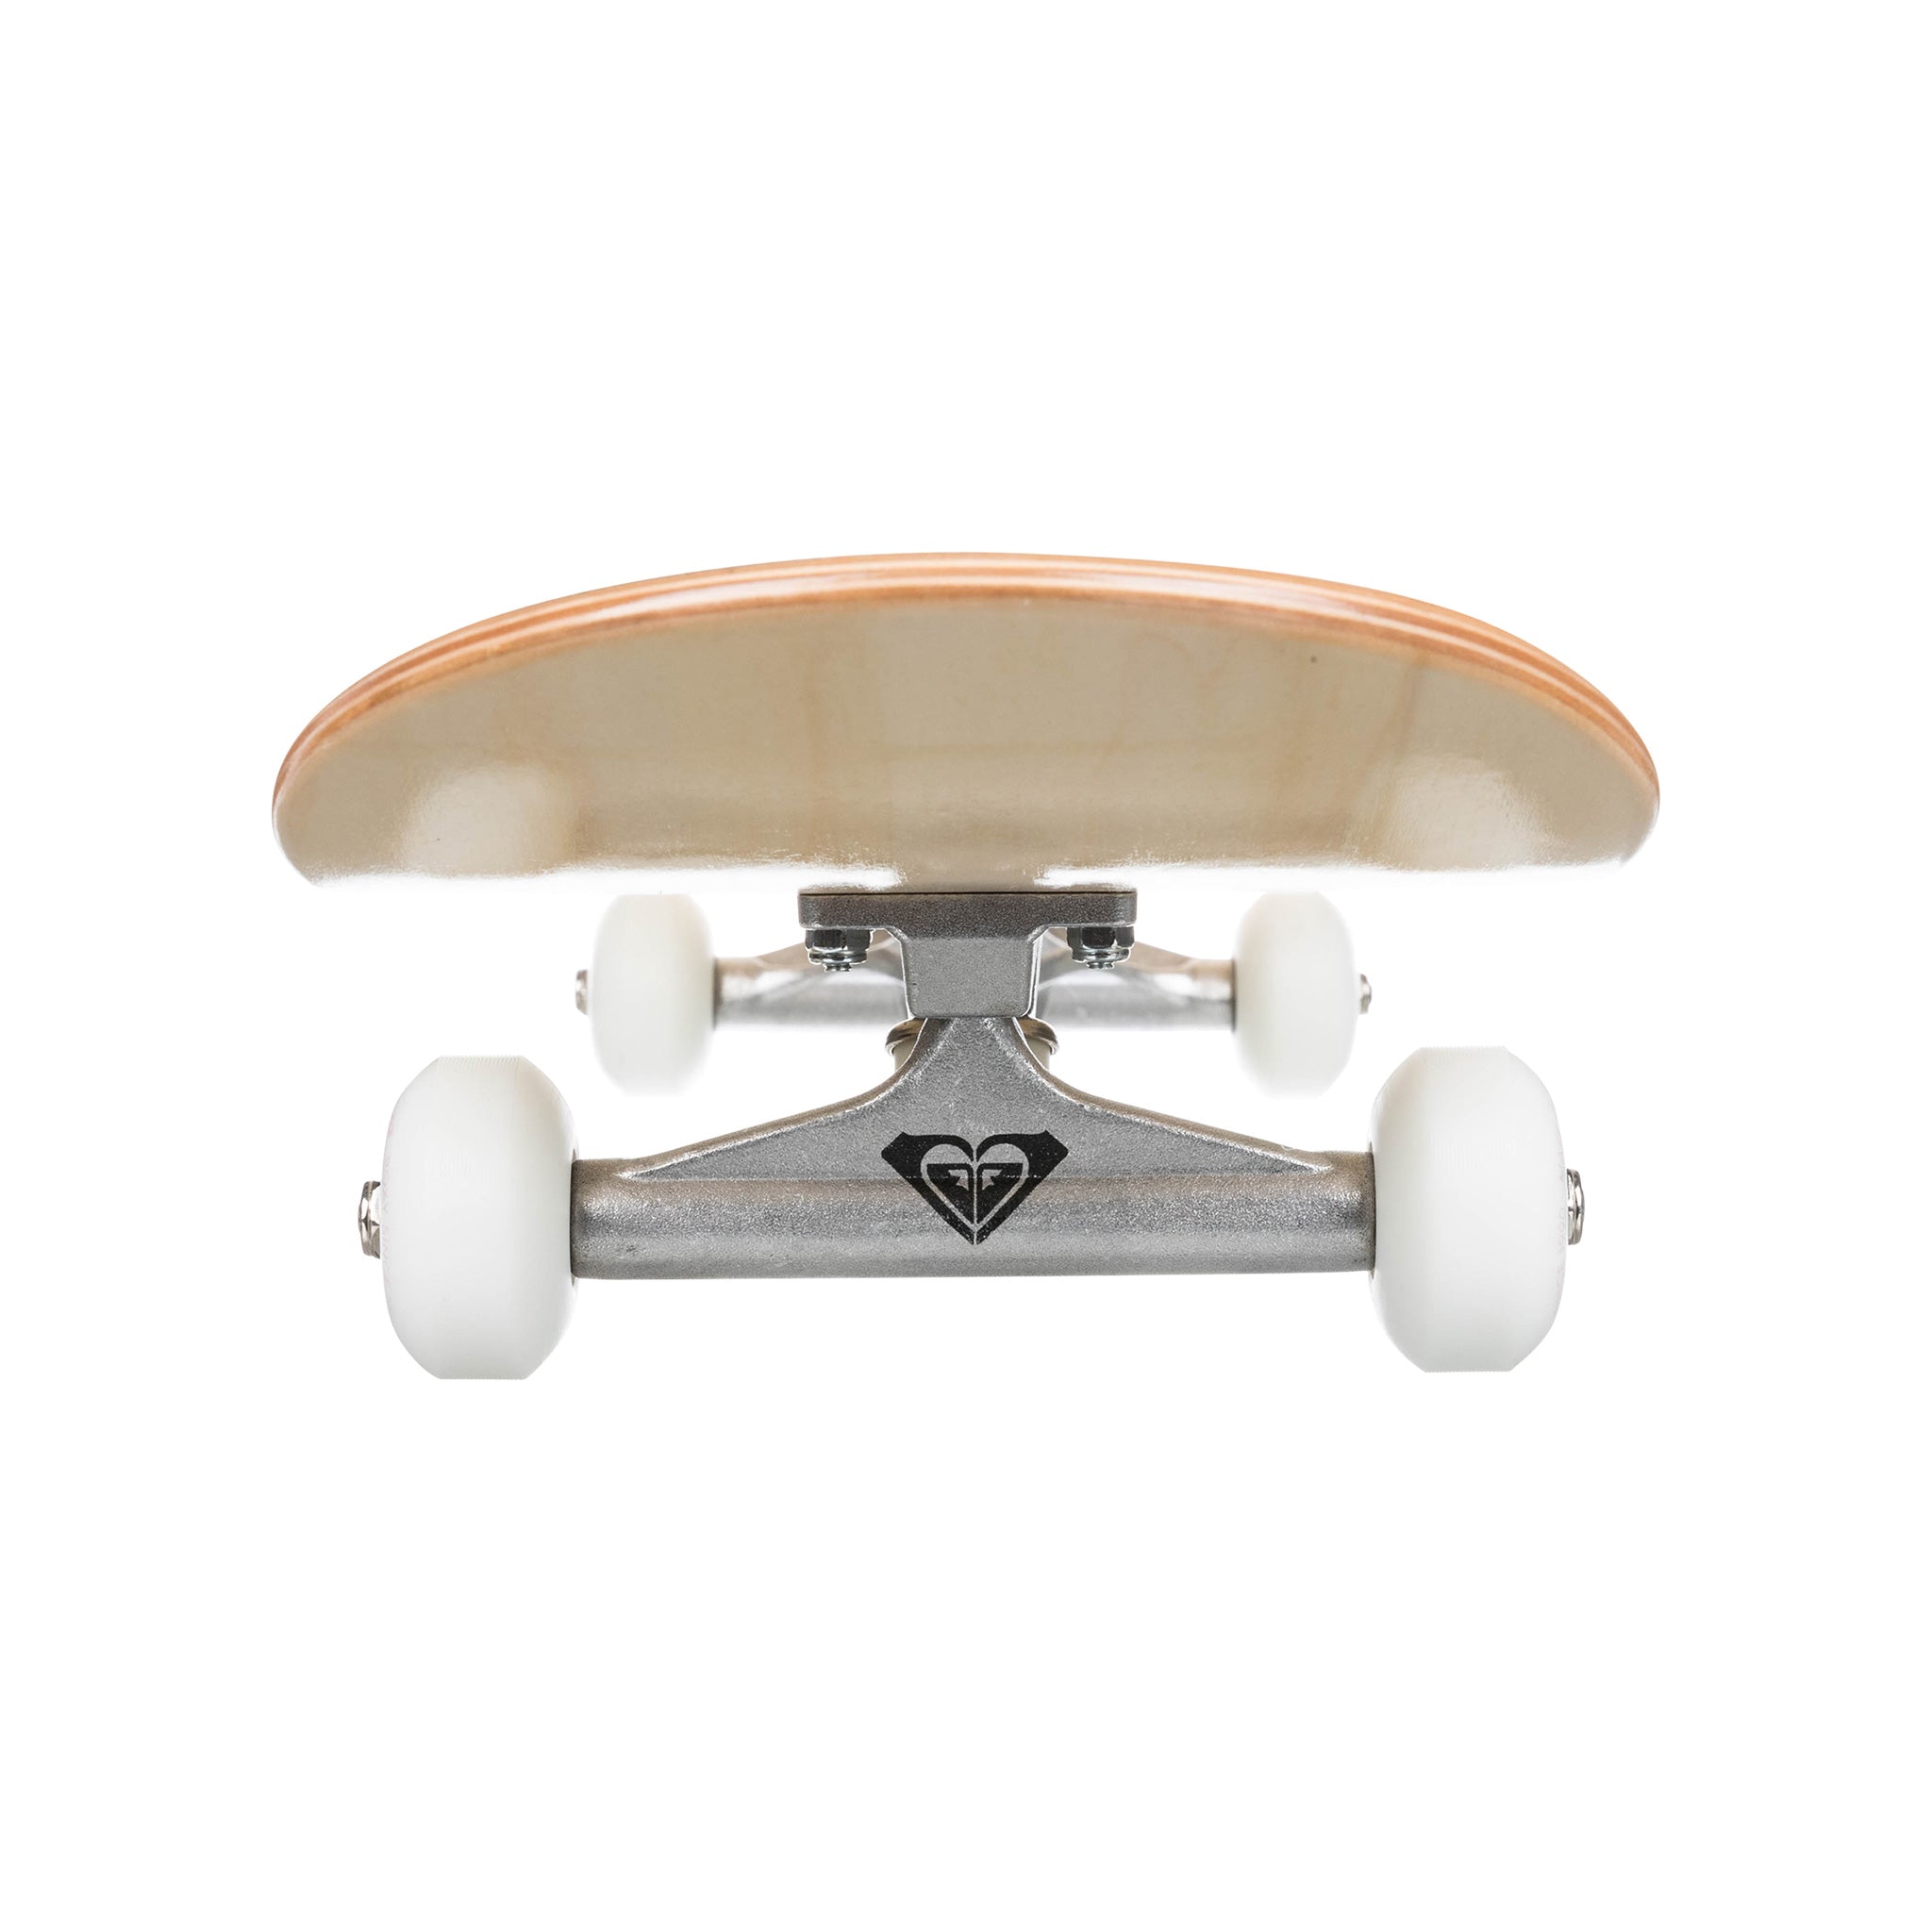 Roxy Skateboard Shade